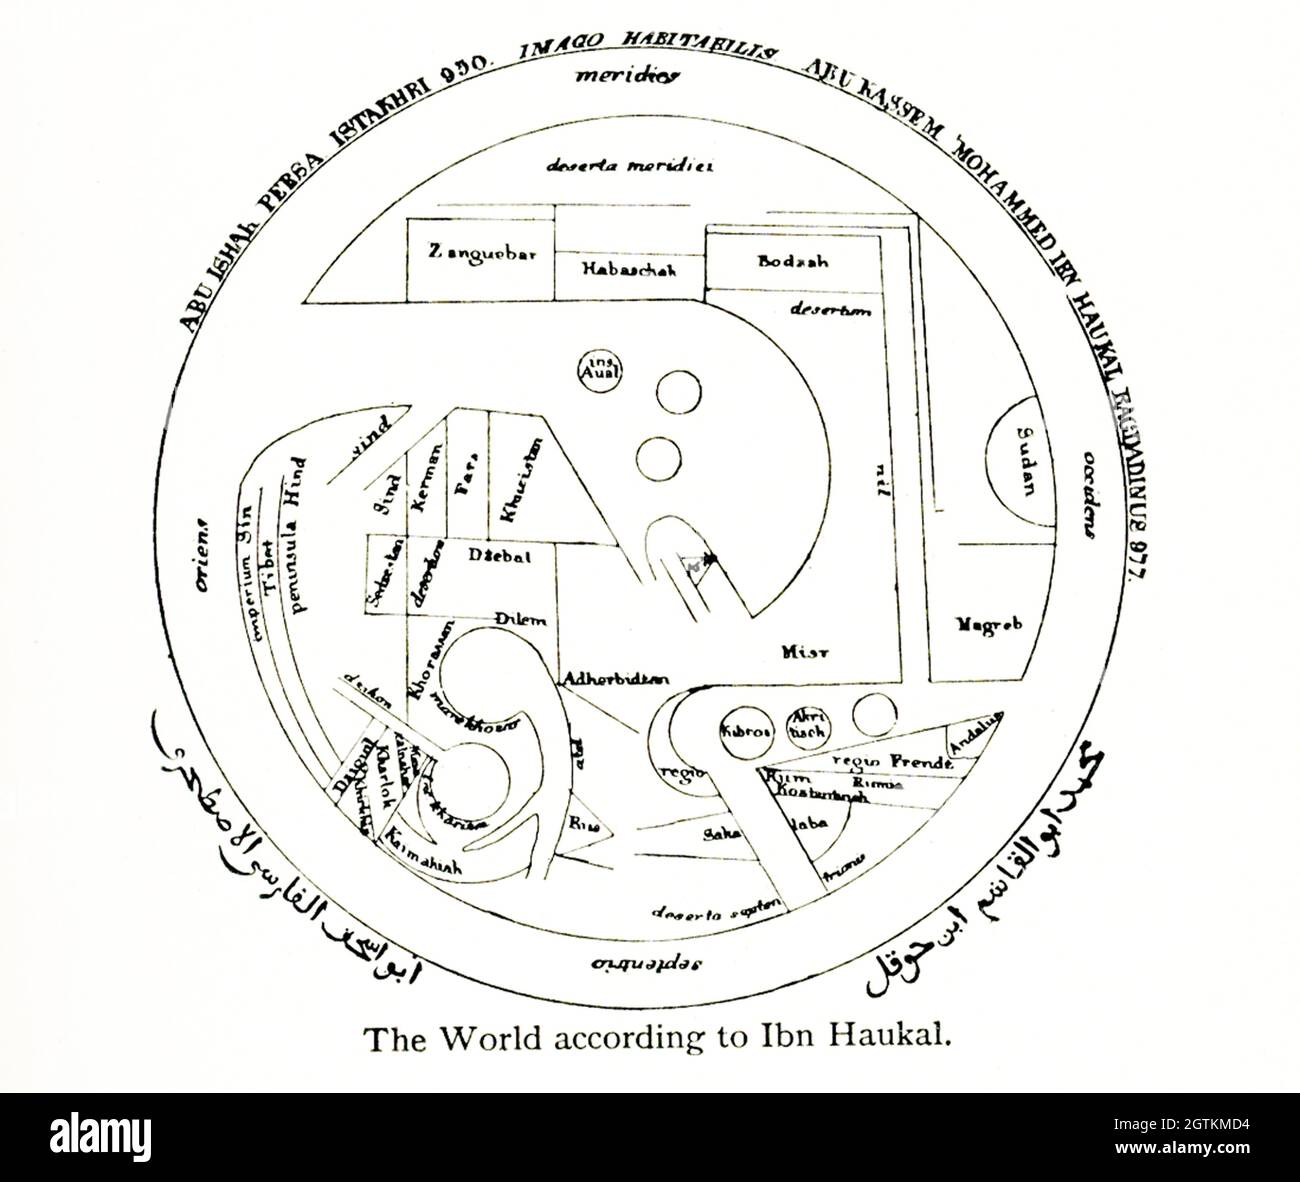 Questa mappa mostra il mondo secondo Ibn Haukal. Muḥammad Abū’l-Qāsim Ibn Ḥawqal, noto anche come Abū al-Qāsim b. ʻAlī Ibn Ḥawqal al-Naṣībī e Ibn Haukal, nacque a Nisibis, nella Mesopotamia superiore. Fu uno scrittore arabo musulmano del X secolo, geografo e cronista che viaggiò durante gli anni dal 943 al 969 d.C. La sua famosa opera, scritta nel 977 d.C., si chiama Ṣūrat al-'Arḍ (“il volto della Terra”). La data della sua morte, nota dai suoi scritti, fu dopo il 978 d.C. Foto Stock